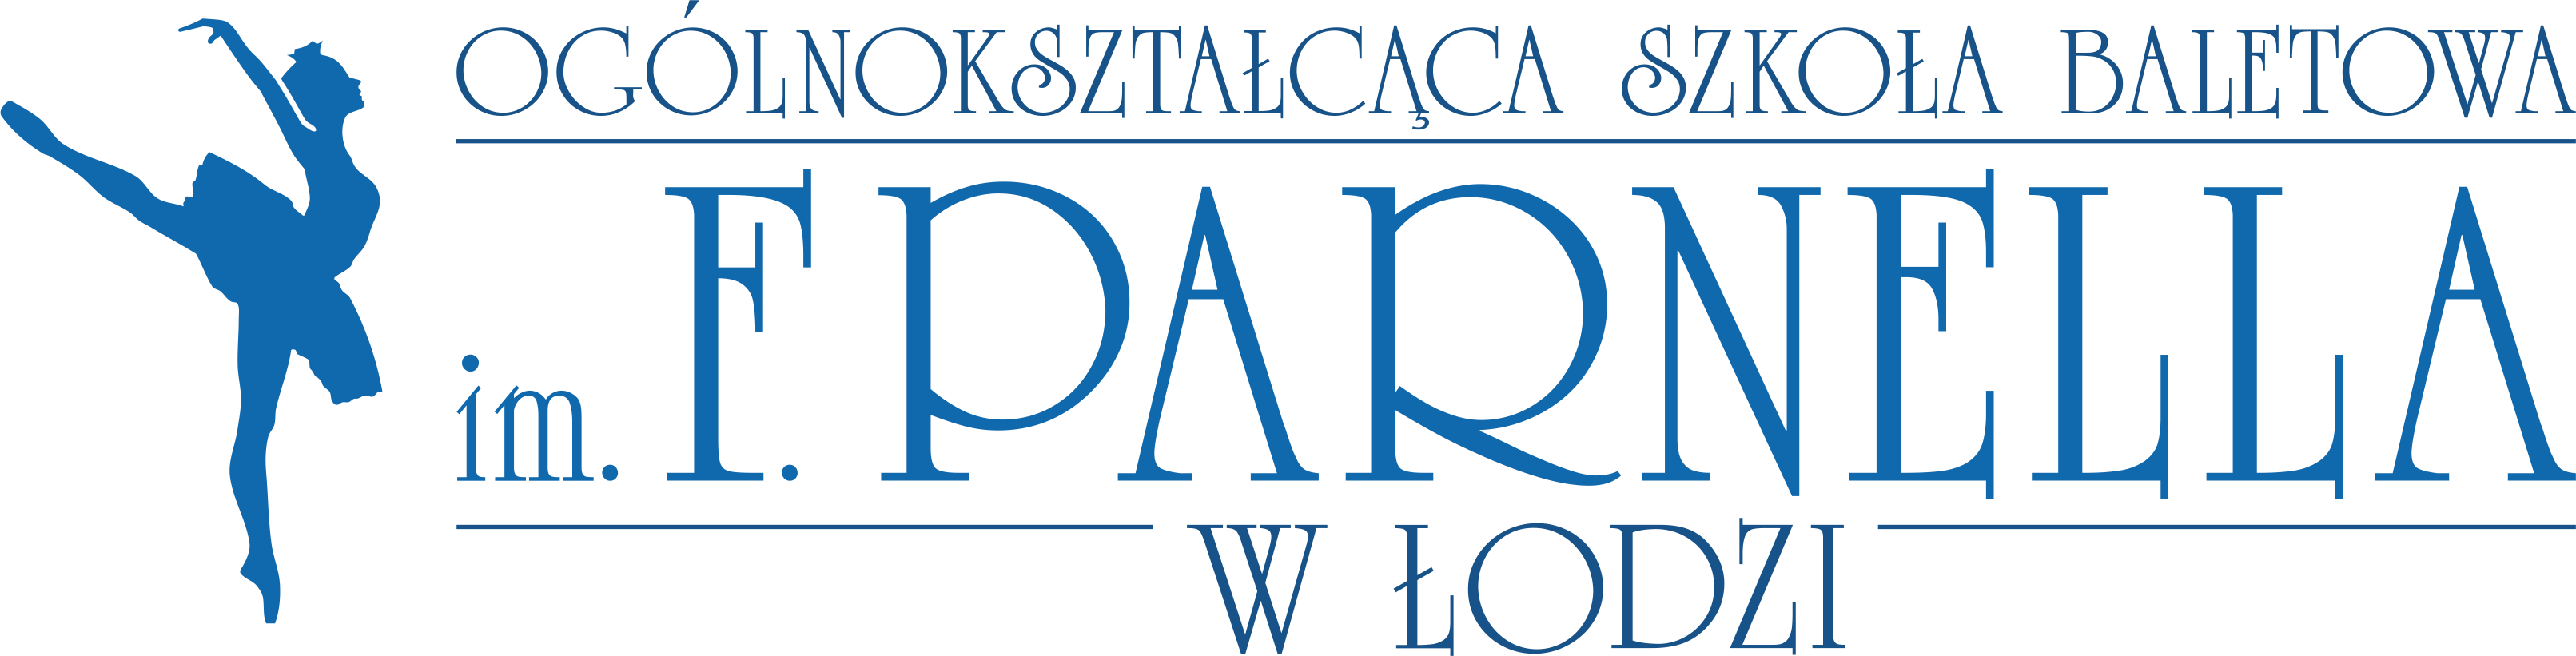 logo OSB Łódź